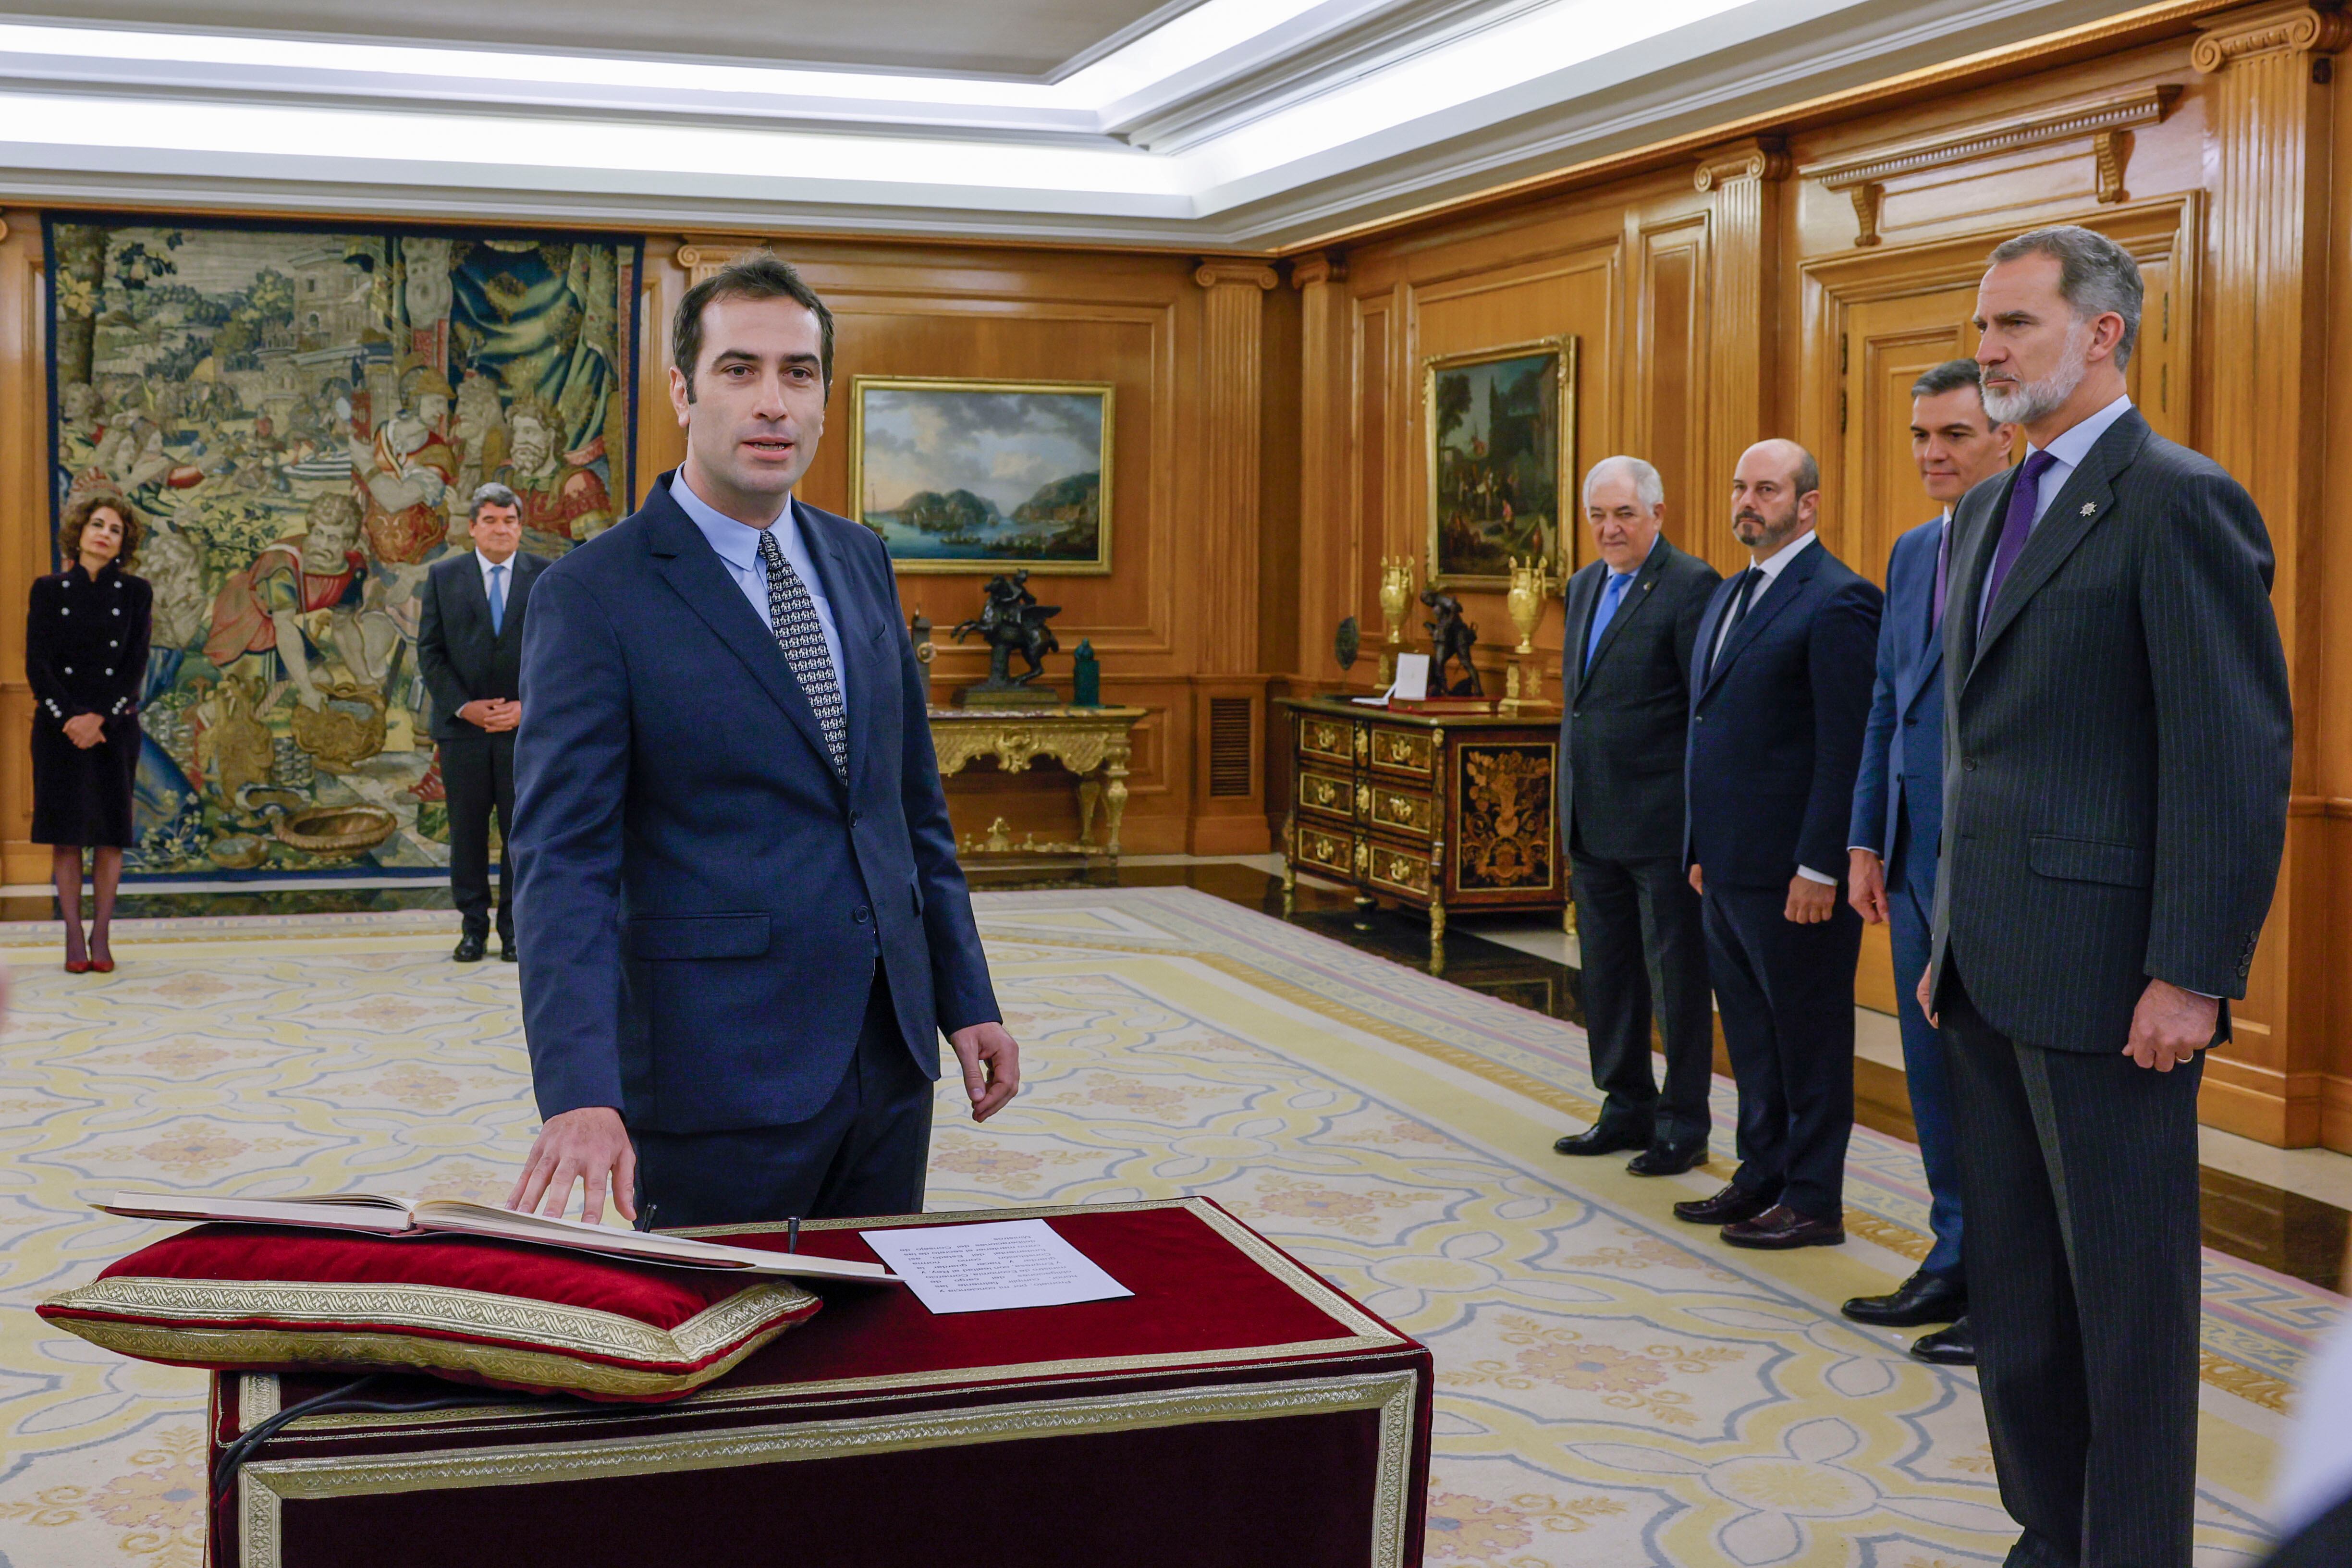 El nuevo ministro de Economía, Carlos Cuerpo (a la izquierda), jura su cargo junto al rey Felipe VI y al presidente del Gobierno, Pedro Sánchez, durante un acto celebrado este viernes en el Palacio de la Zarzuela.